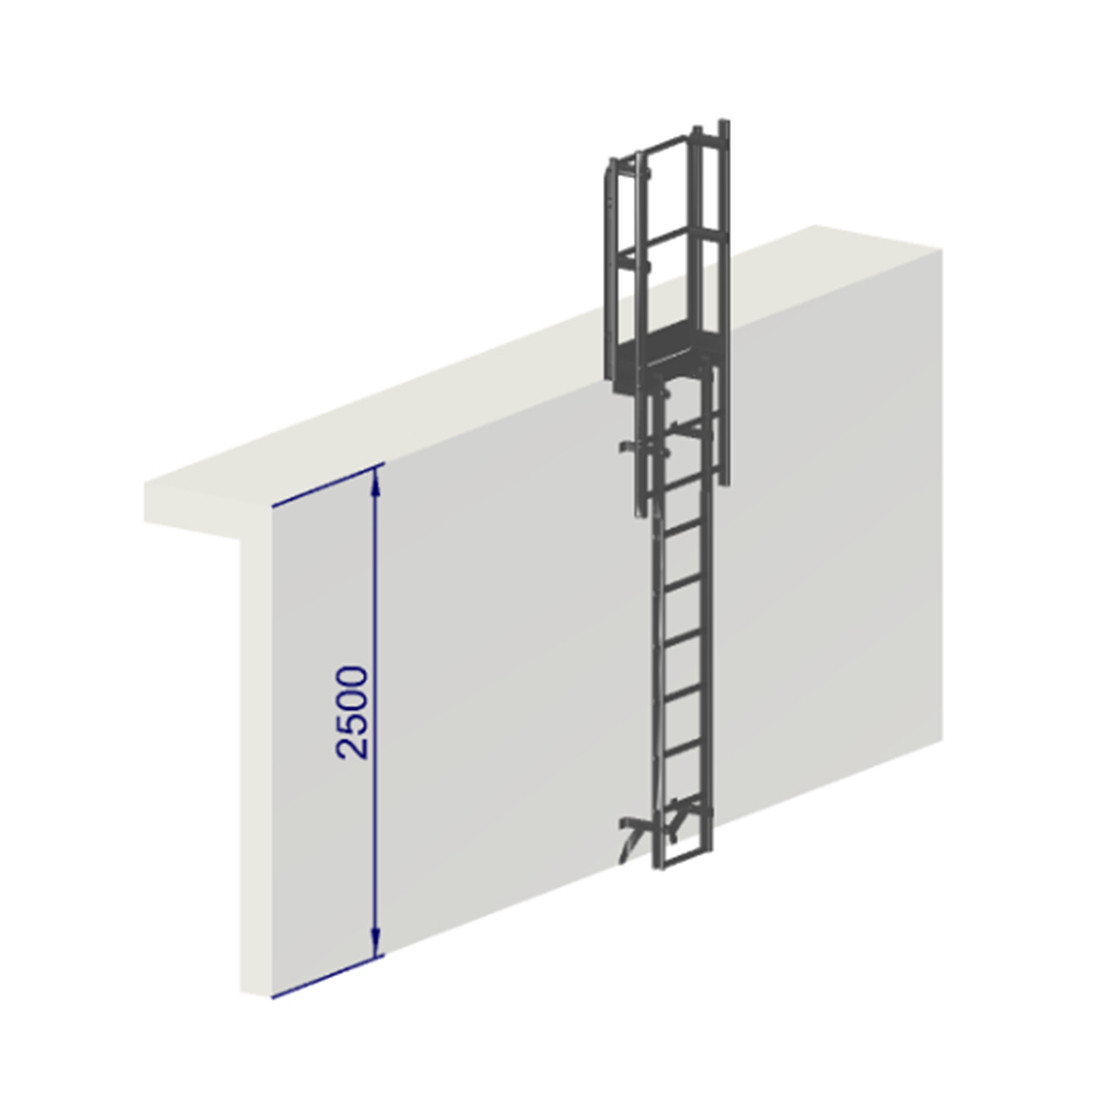 Escalera de proteccion dorsal - Crinolina altura 2500 sin aros de proteccion